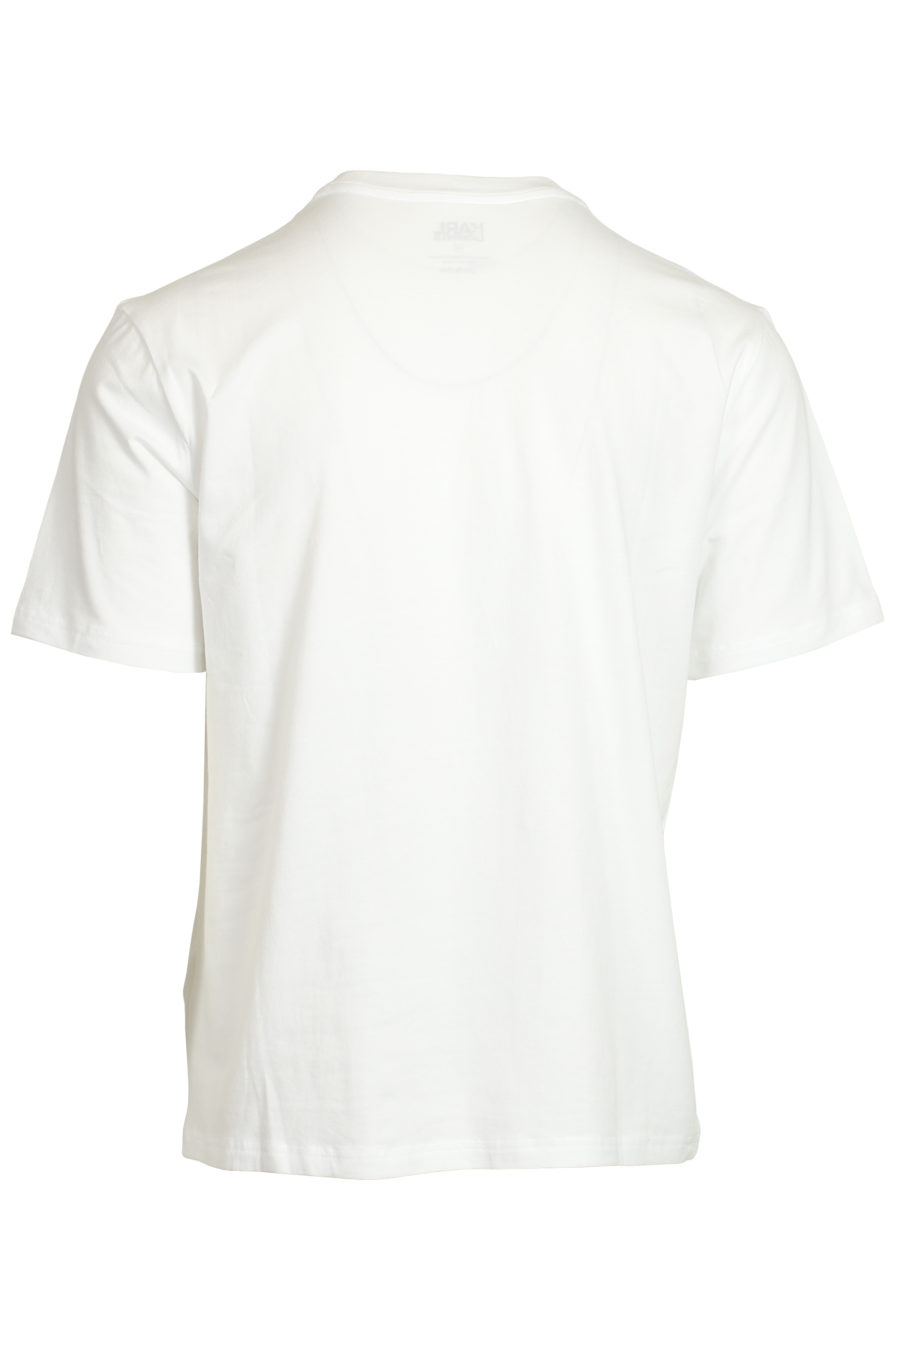 Set de pijama negro y blanco con logo en goma - IMG 3732